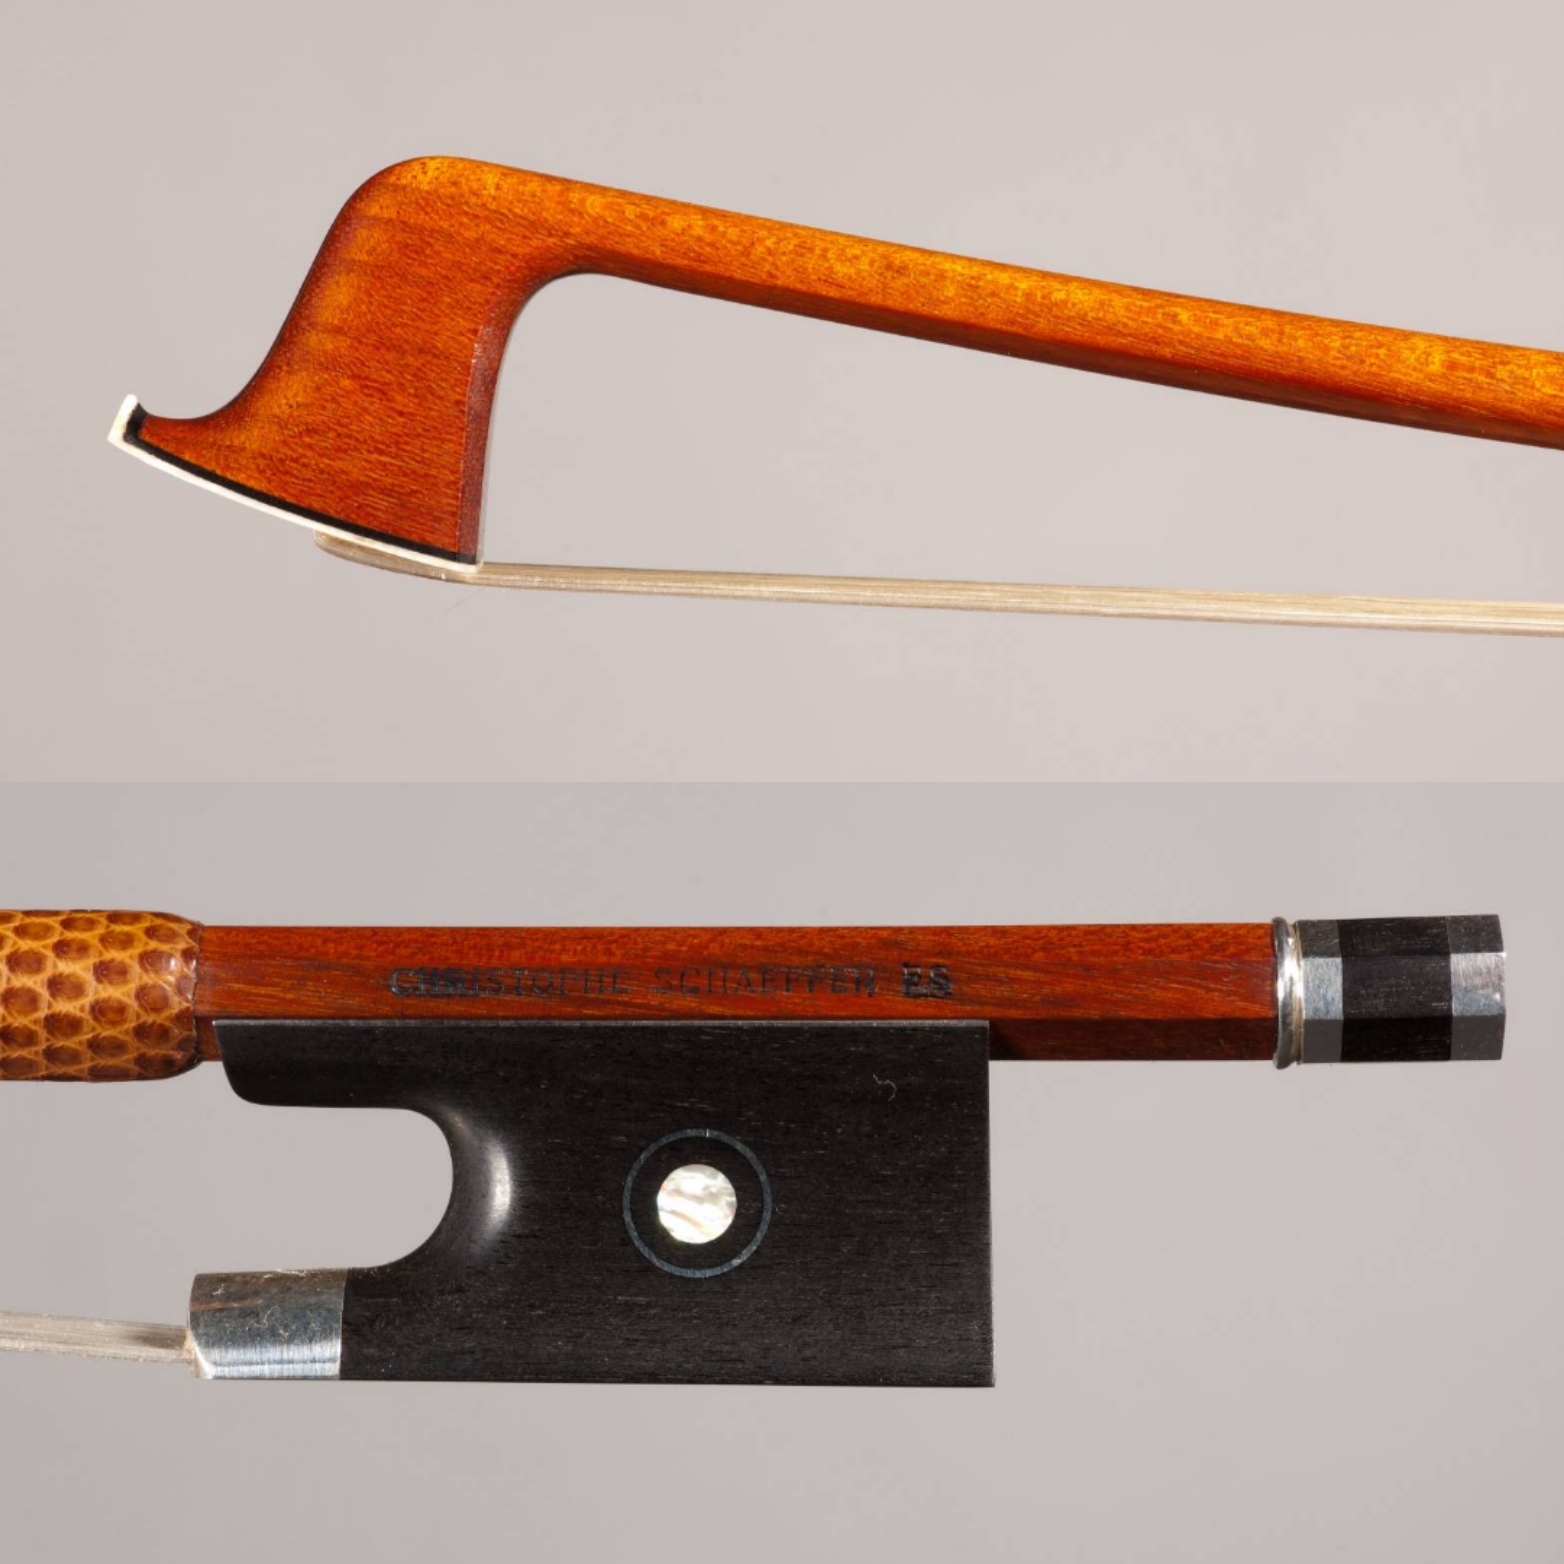 Christophe Schaeffer Christophe Schaeffer（クリストフ・シェーファー）は1958年生まれ。Bernard Ouchard（ベルナール・ウーシャ）に弓製作を学び、20世紀最高の弓職人と称されるEugene Sartory（ユージン・サルトリー）の子孫からその道具 […]